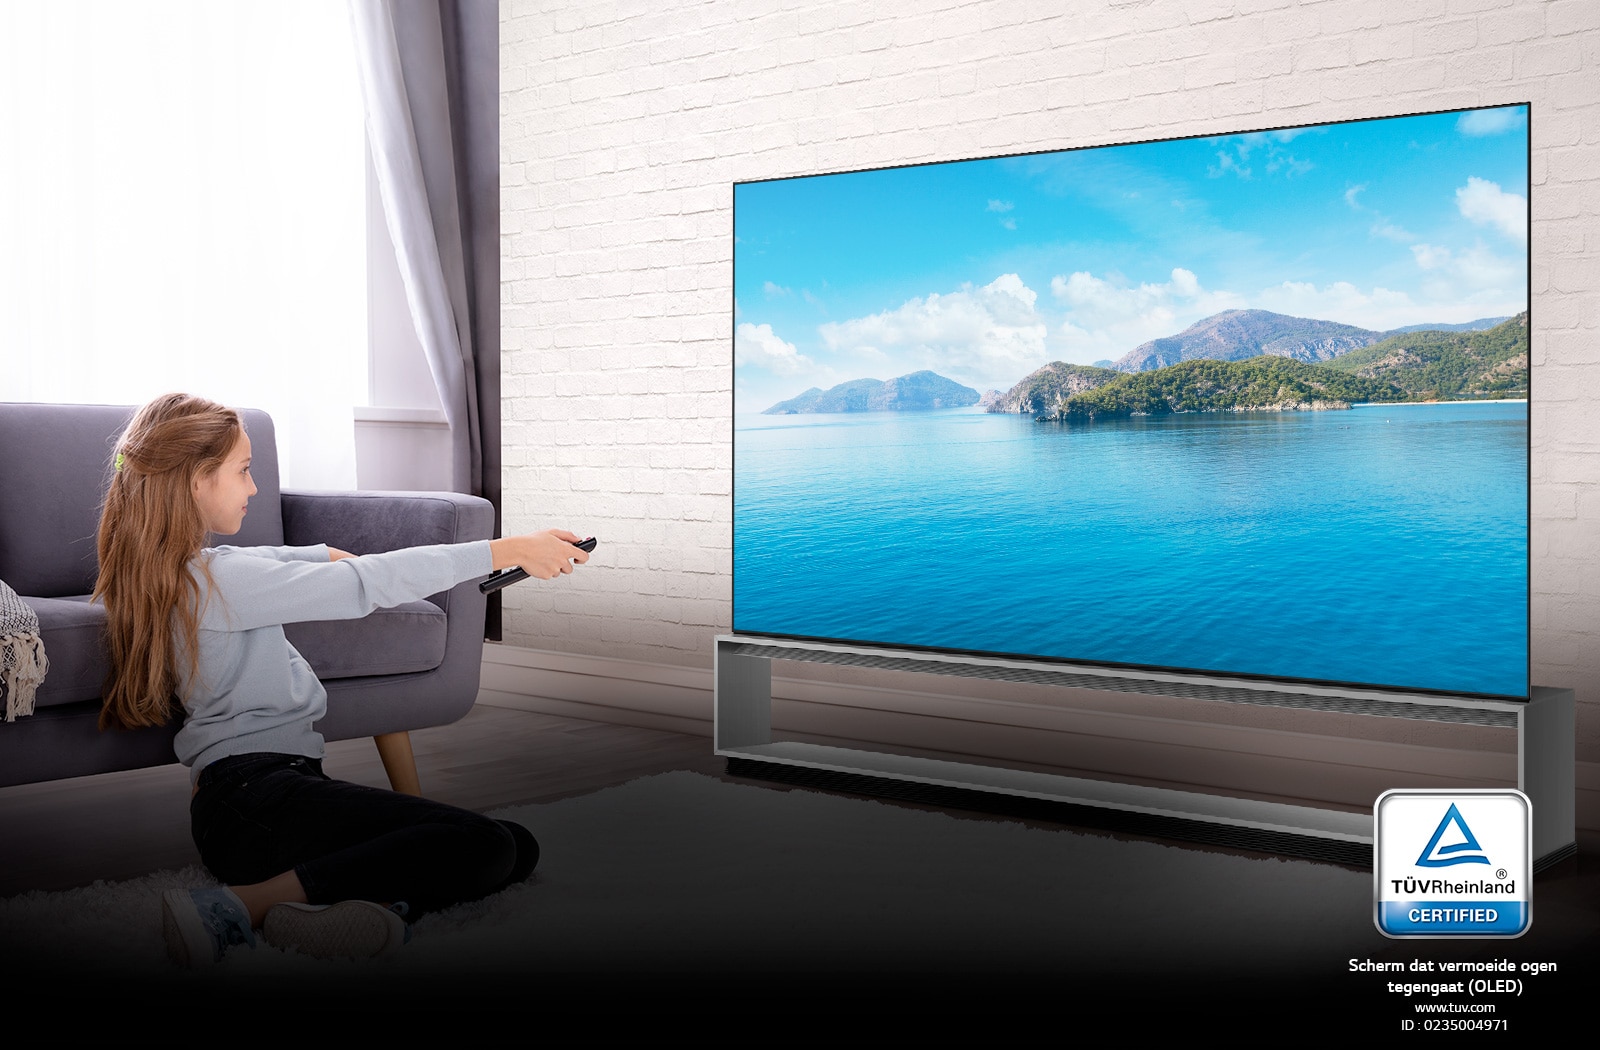 LG OLED TV gecertificeerd door TÜV Rheinland1